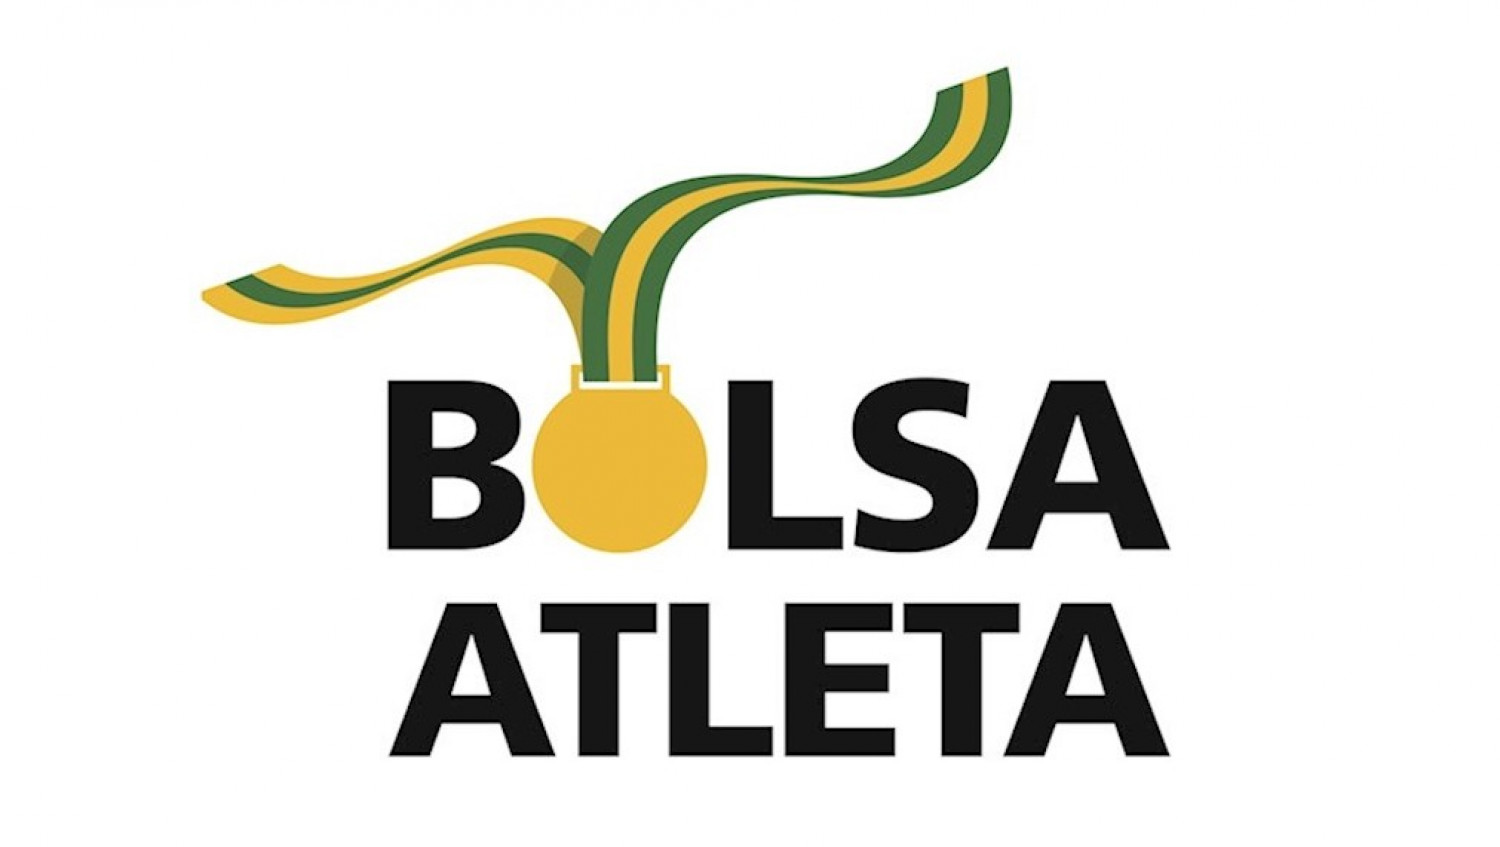 COMUNICADO - ATLETAS INADIMPLENTES COM TERMO DE ADESÃO - BOLSA ATLETA